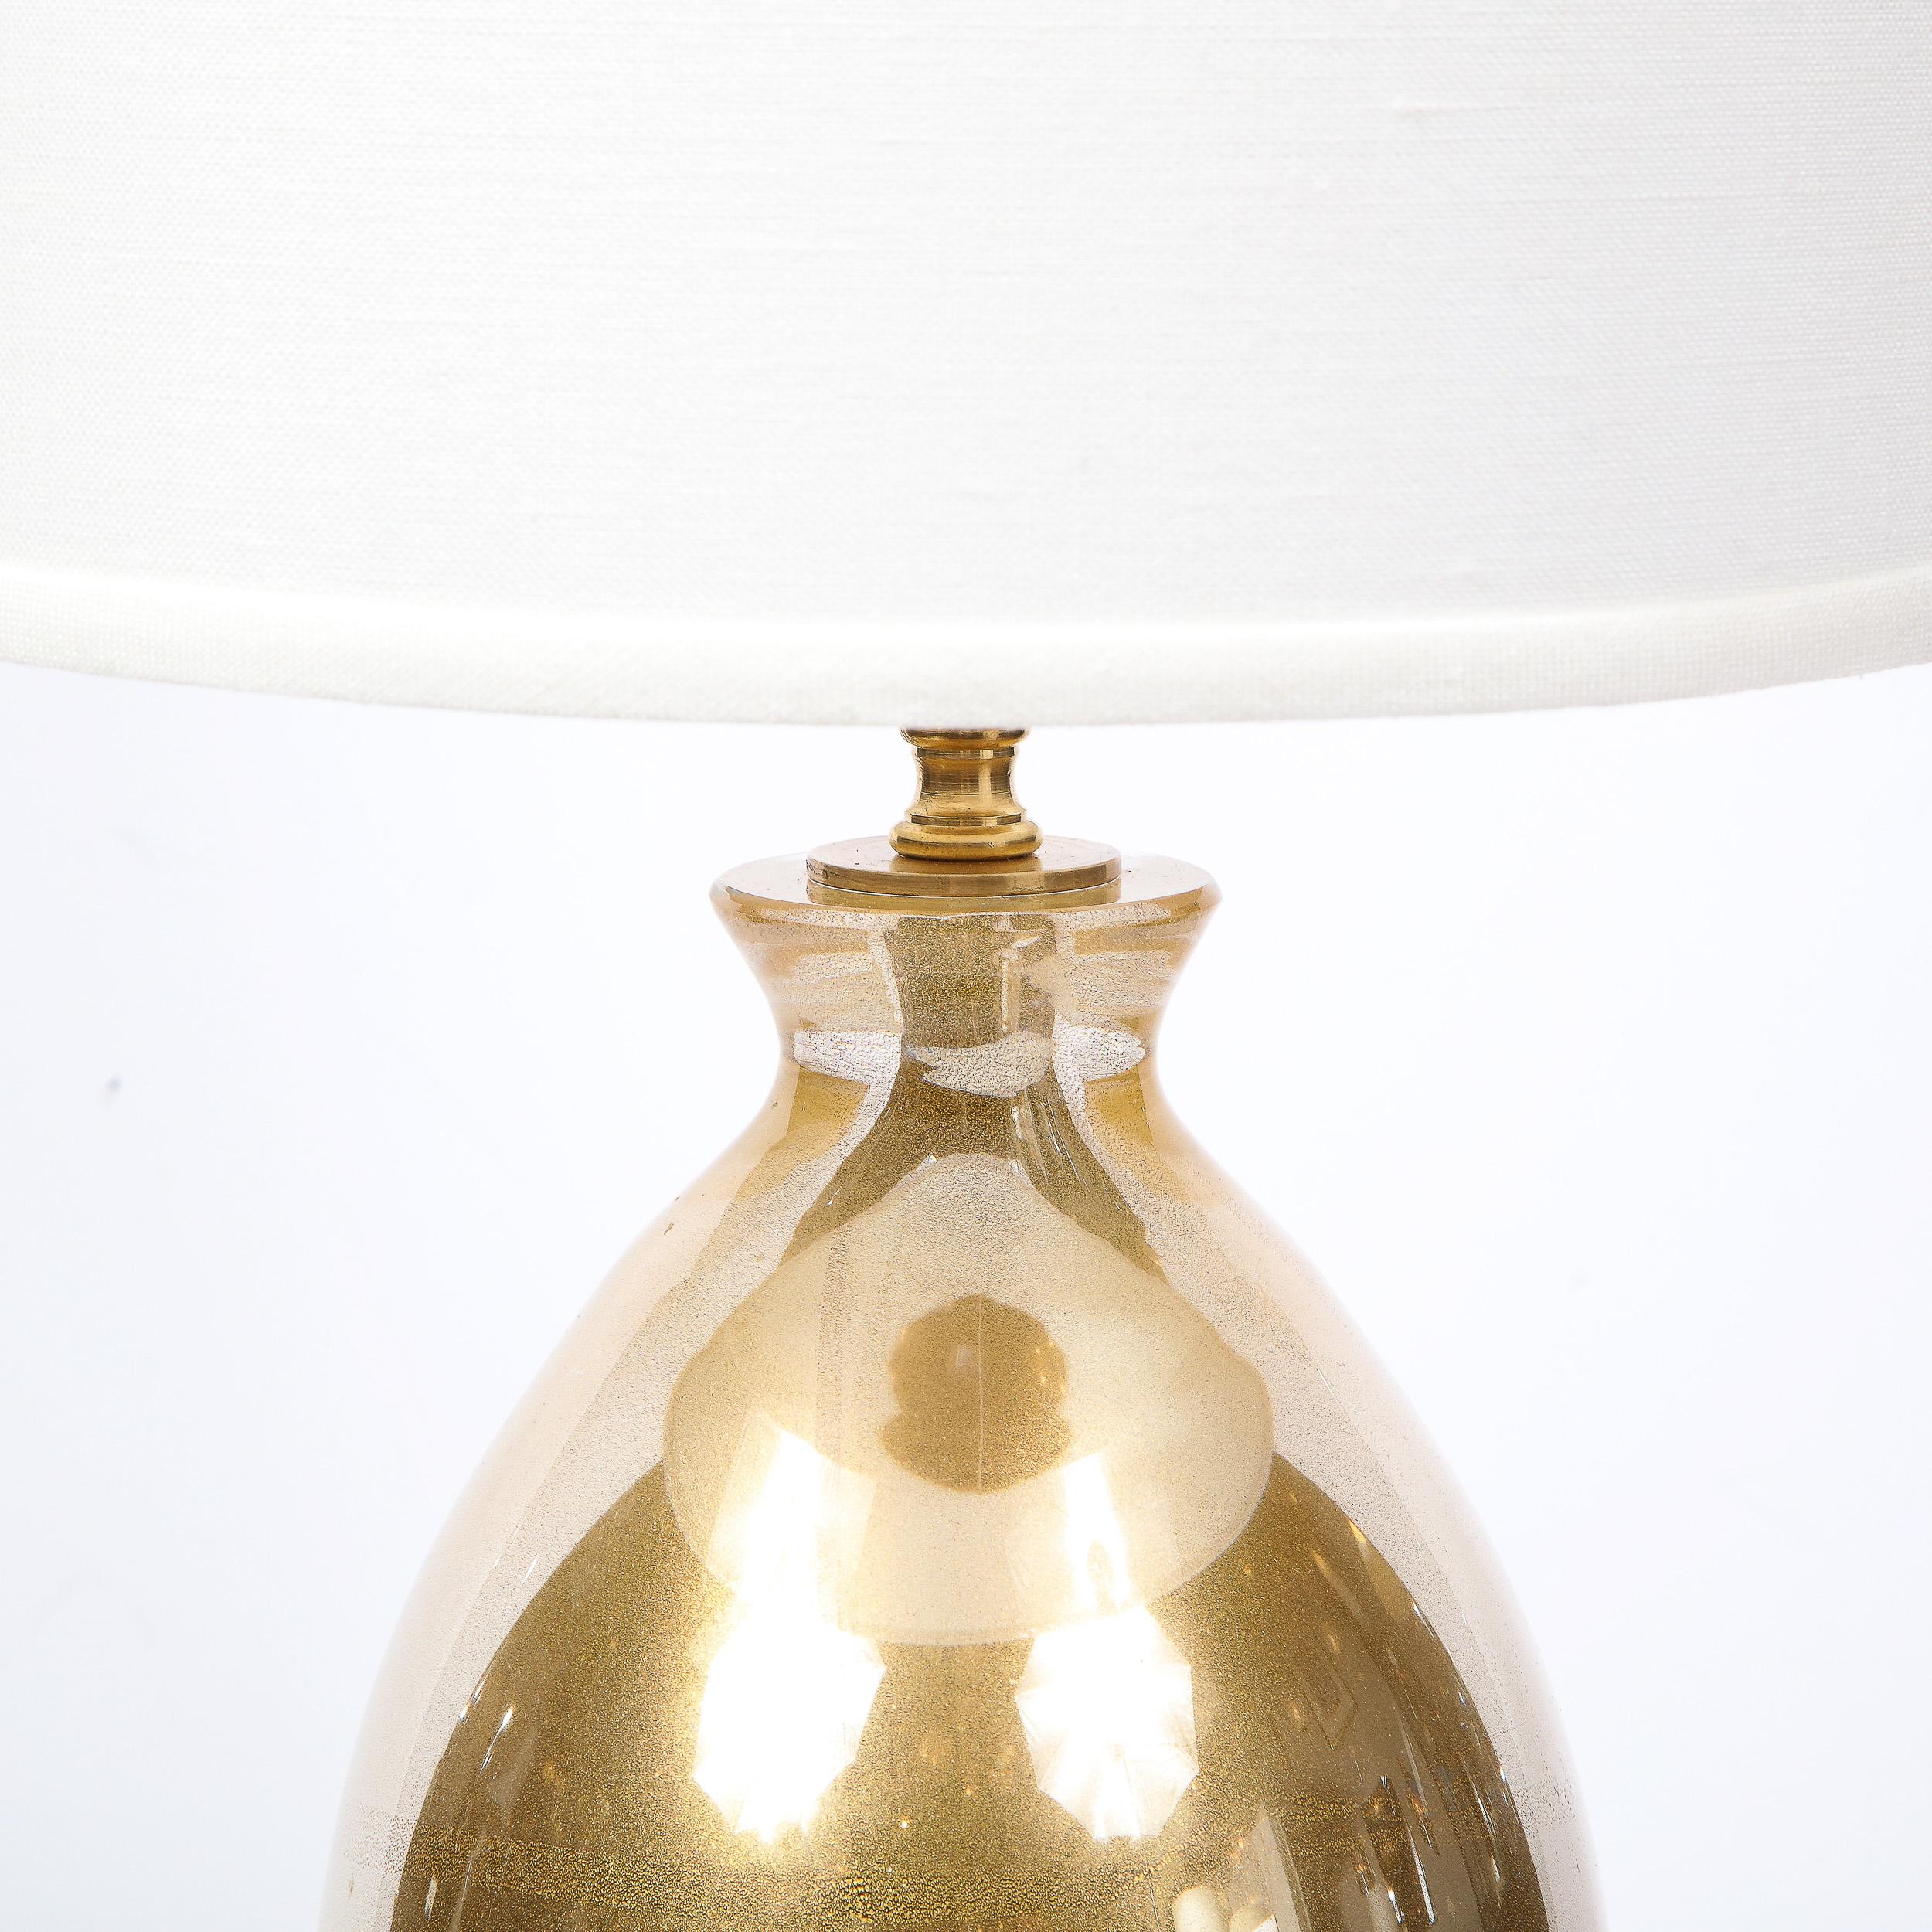 Cette étonnante paire de lampes de table a été réalisée à Murano, en Italie, l'île située au large de la côte de Venise et réputée depuis des siècles pour sa production de verre de qualité supérieure. Elles présentent des bases circulaires en verre